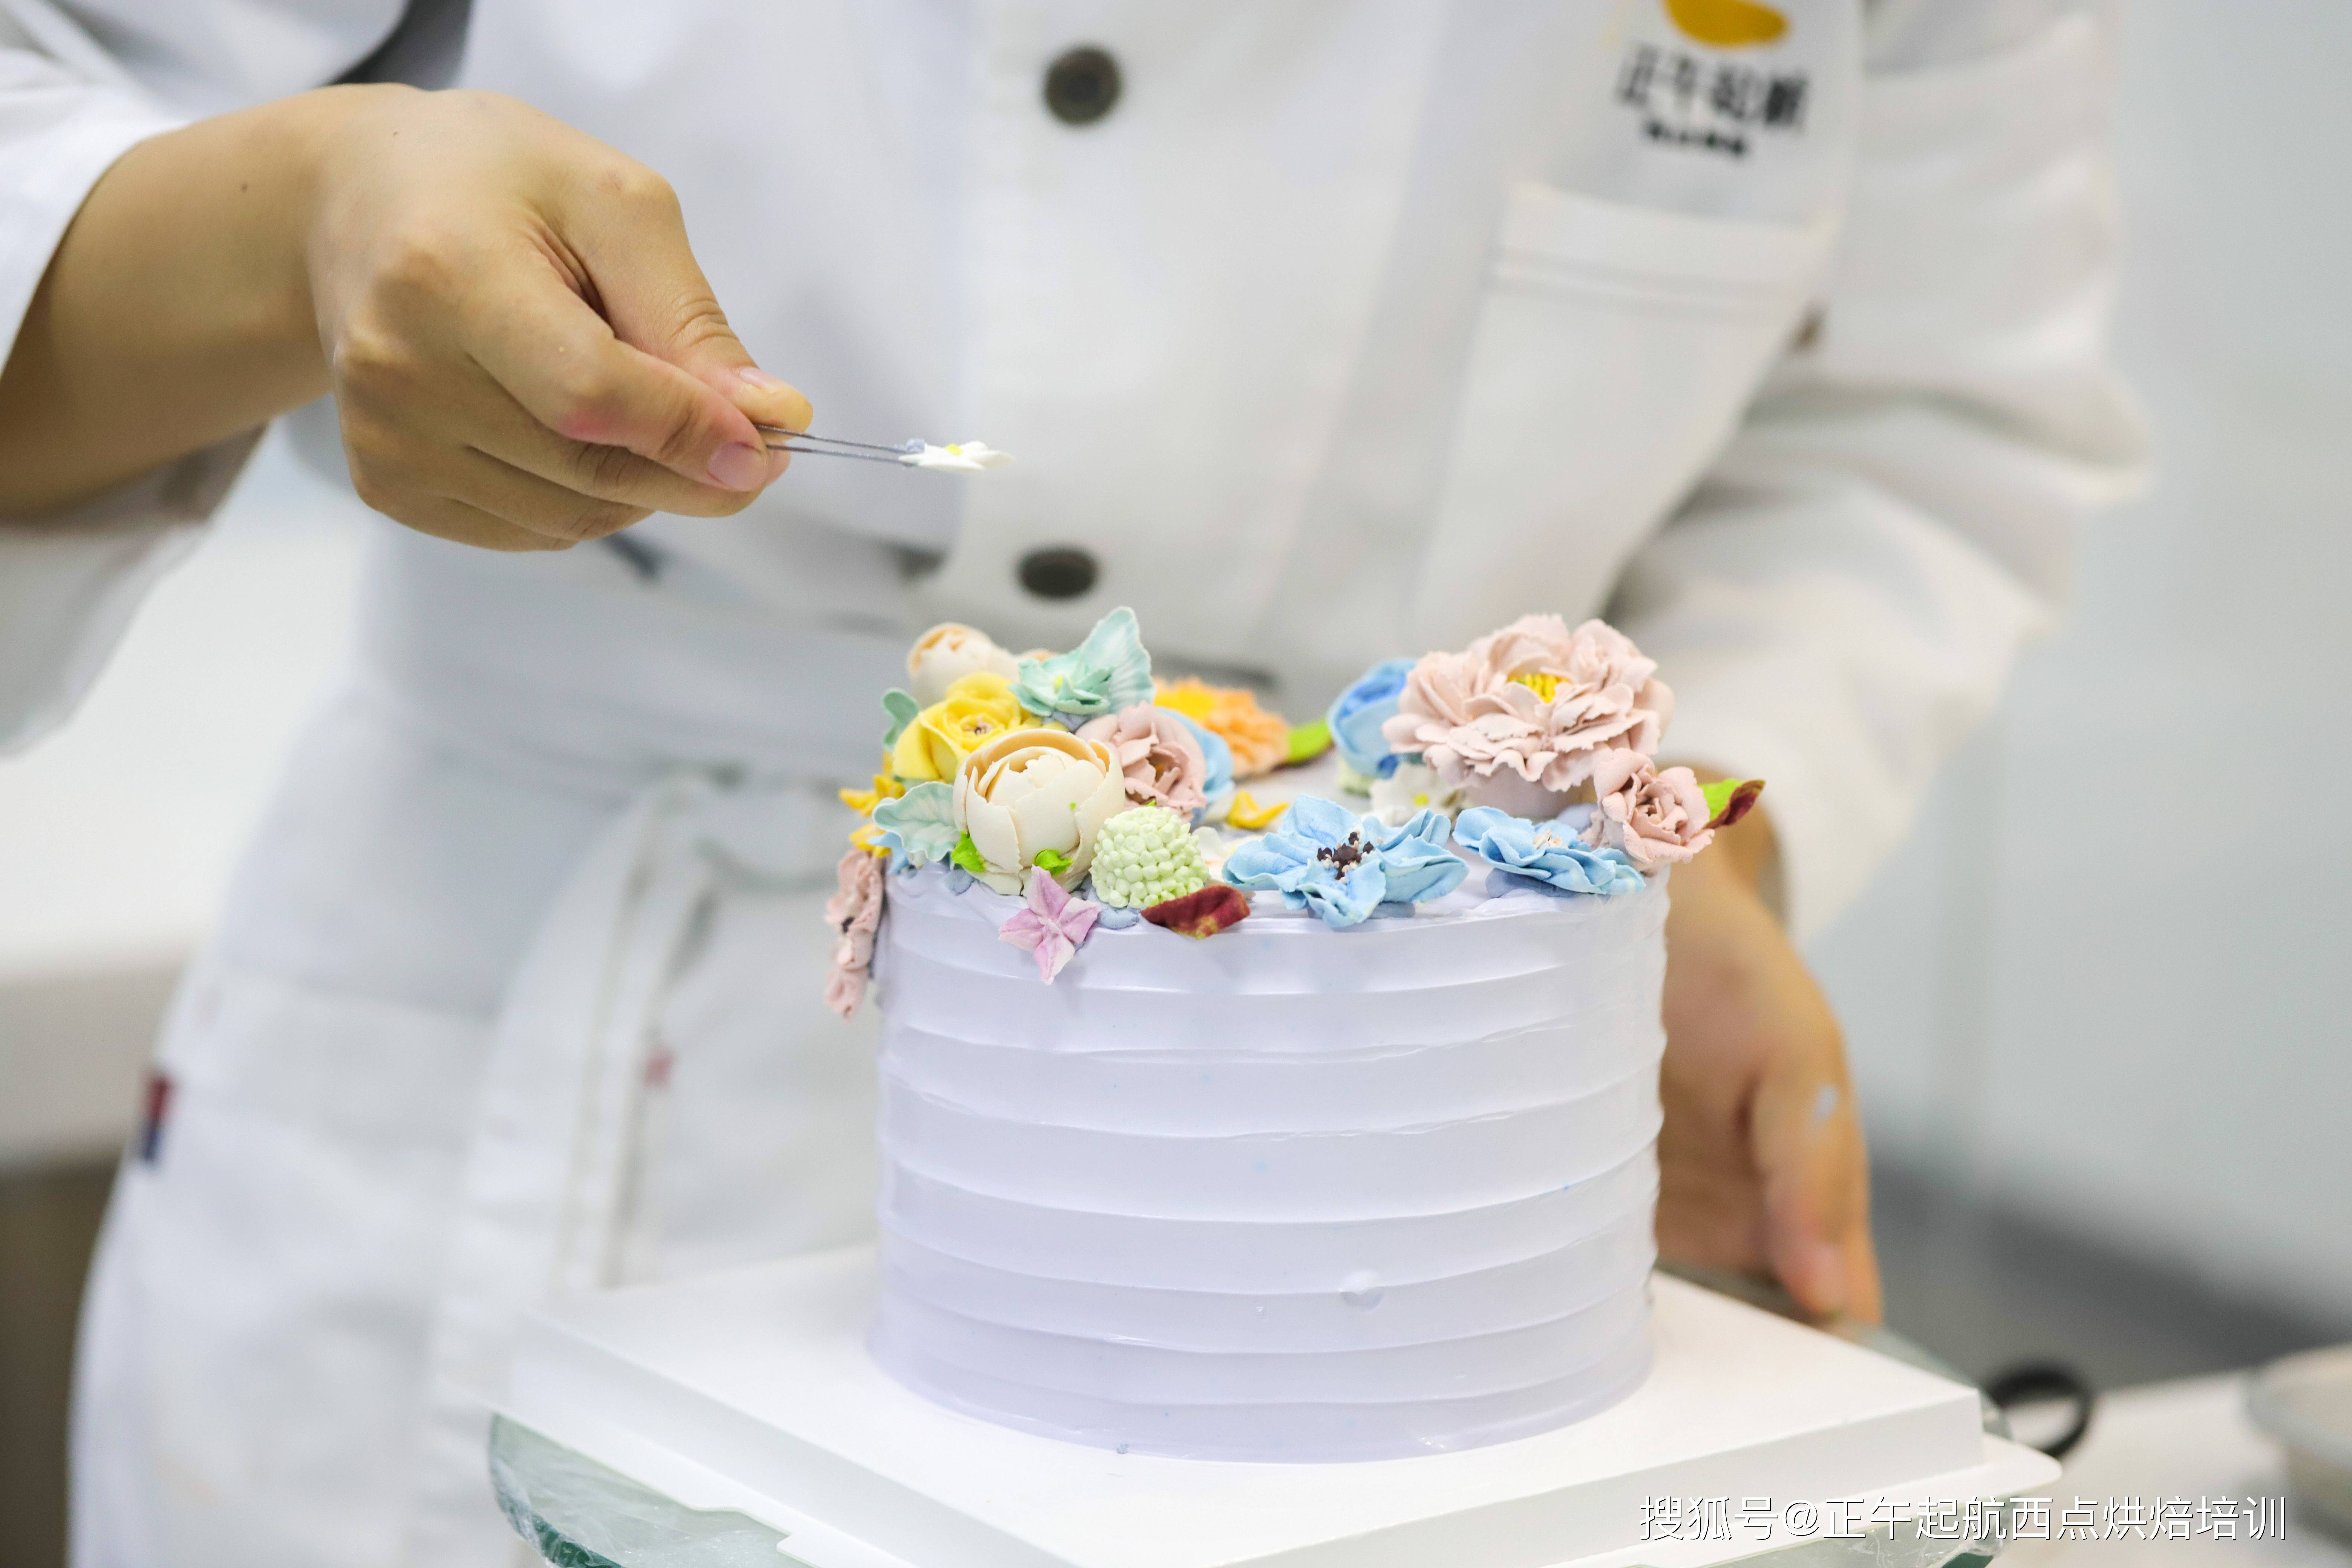 新手学蛋糕必看,蛋糕制作需要注意的事项